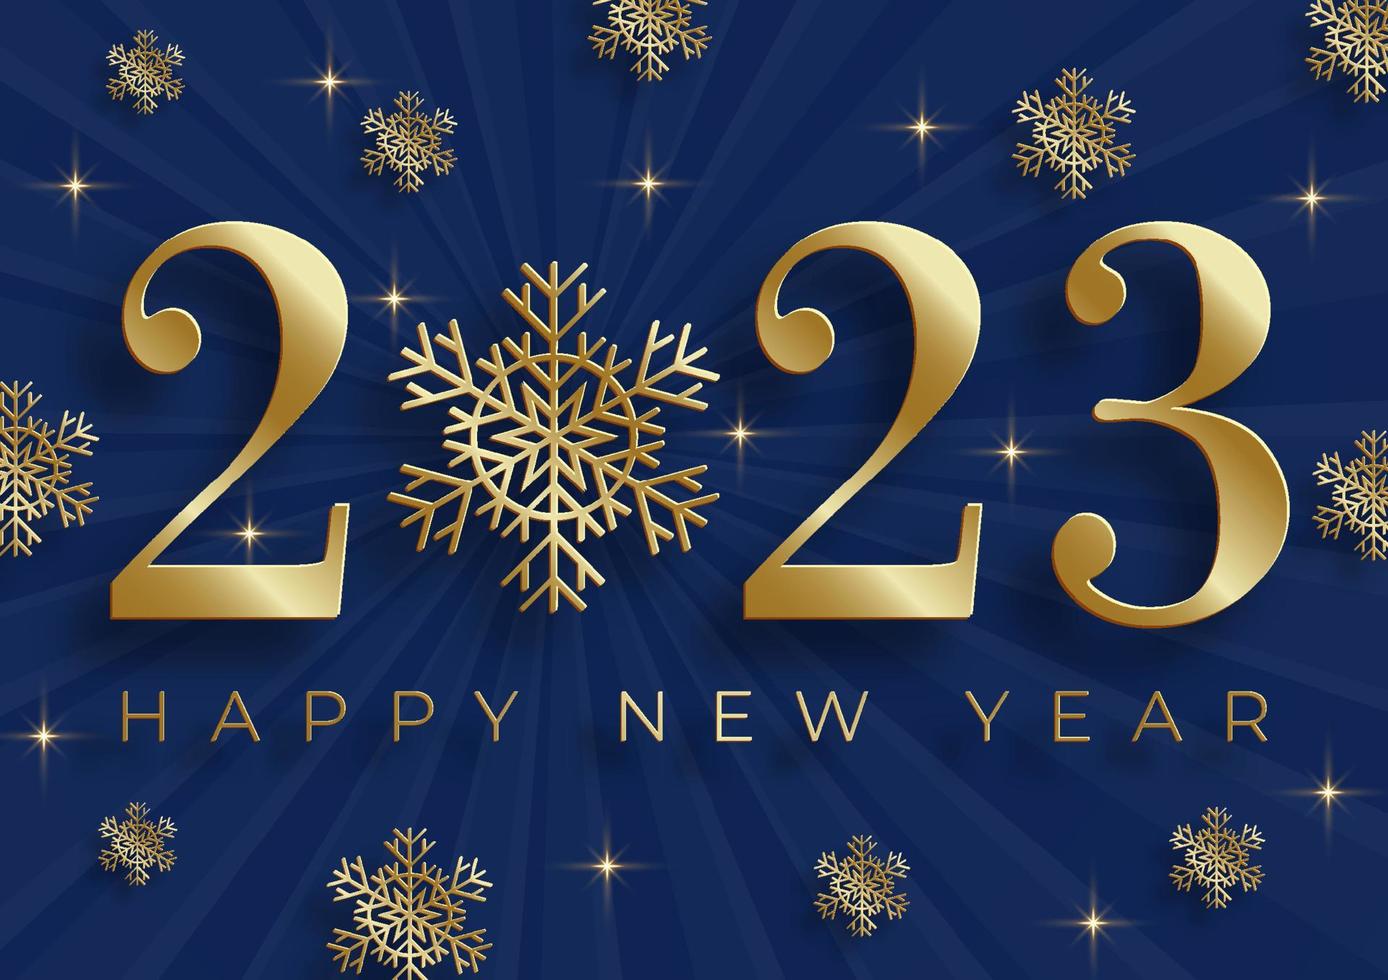 gelukkig nieuwjaar 2023, feestelijk patroon op kleur achtergrond voor uitnodigingskaart, vrolijk kerstfeest, gelukkig nieuwjaar 2023, wenskaarten vector